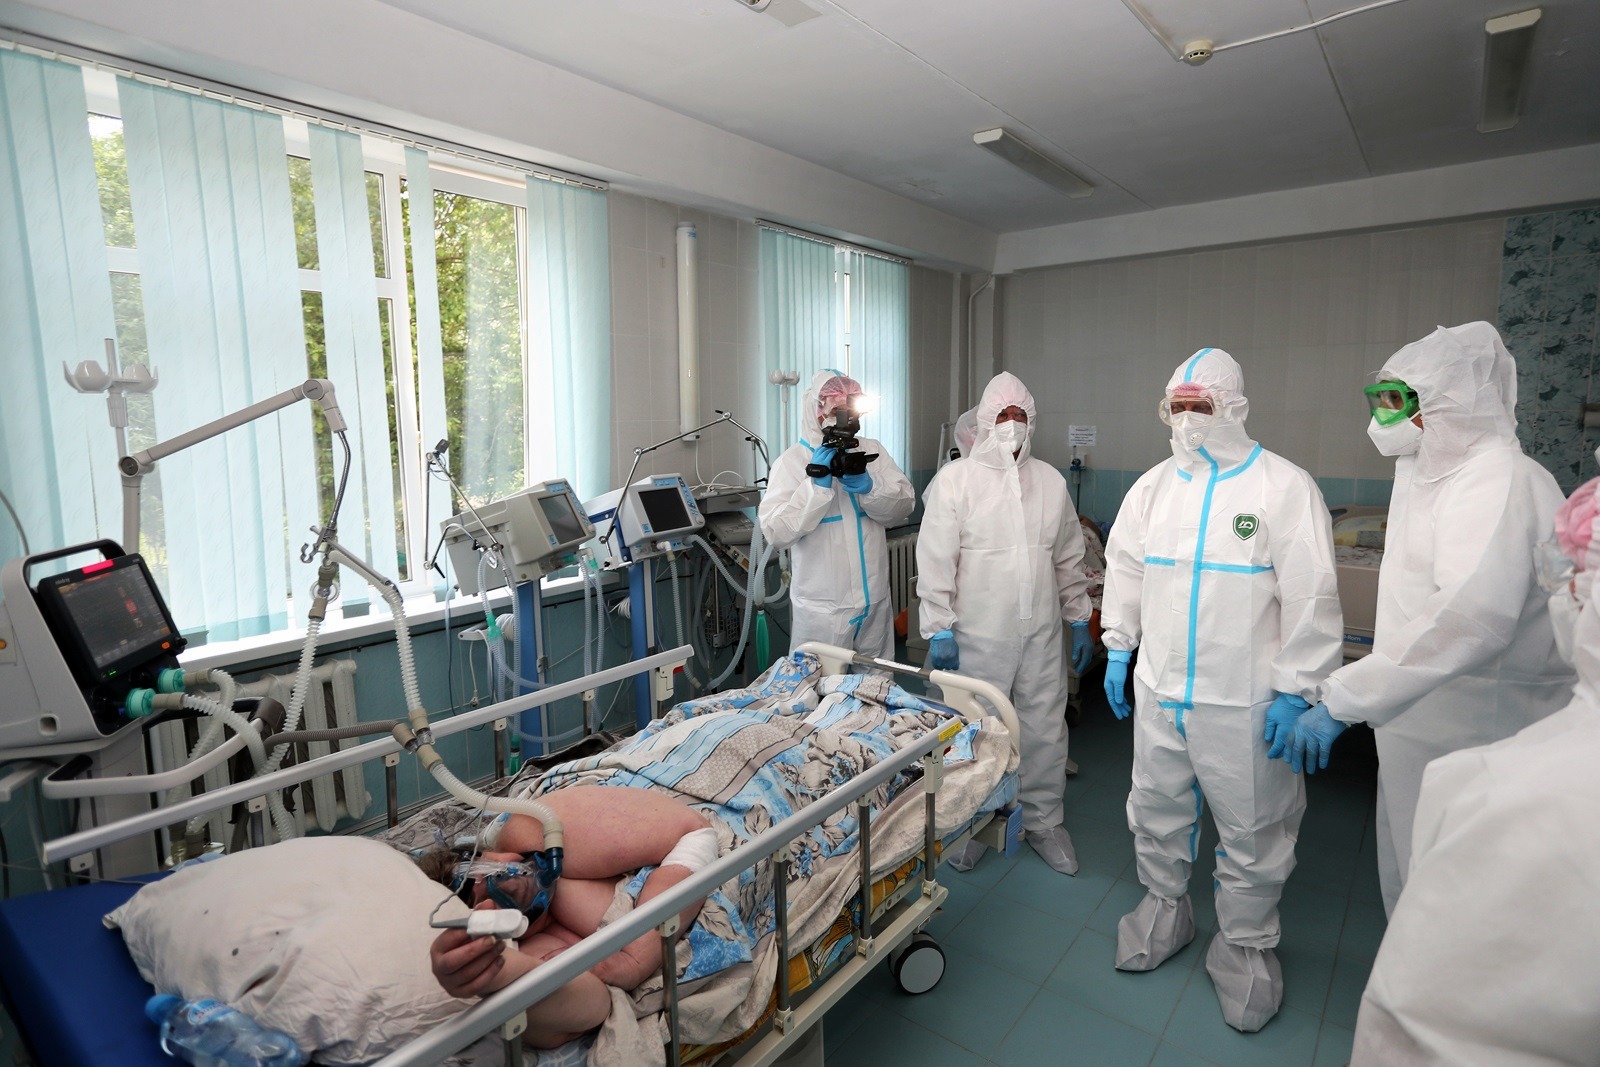 Ковид 19 заболевшие. Ковидный госпиталь во Владимире. Отделение реанимации и интенсивной терапии.